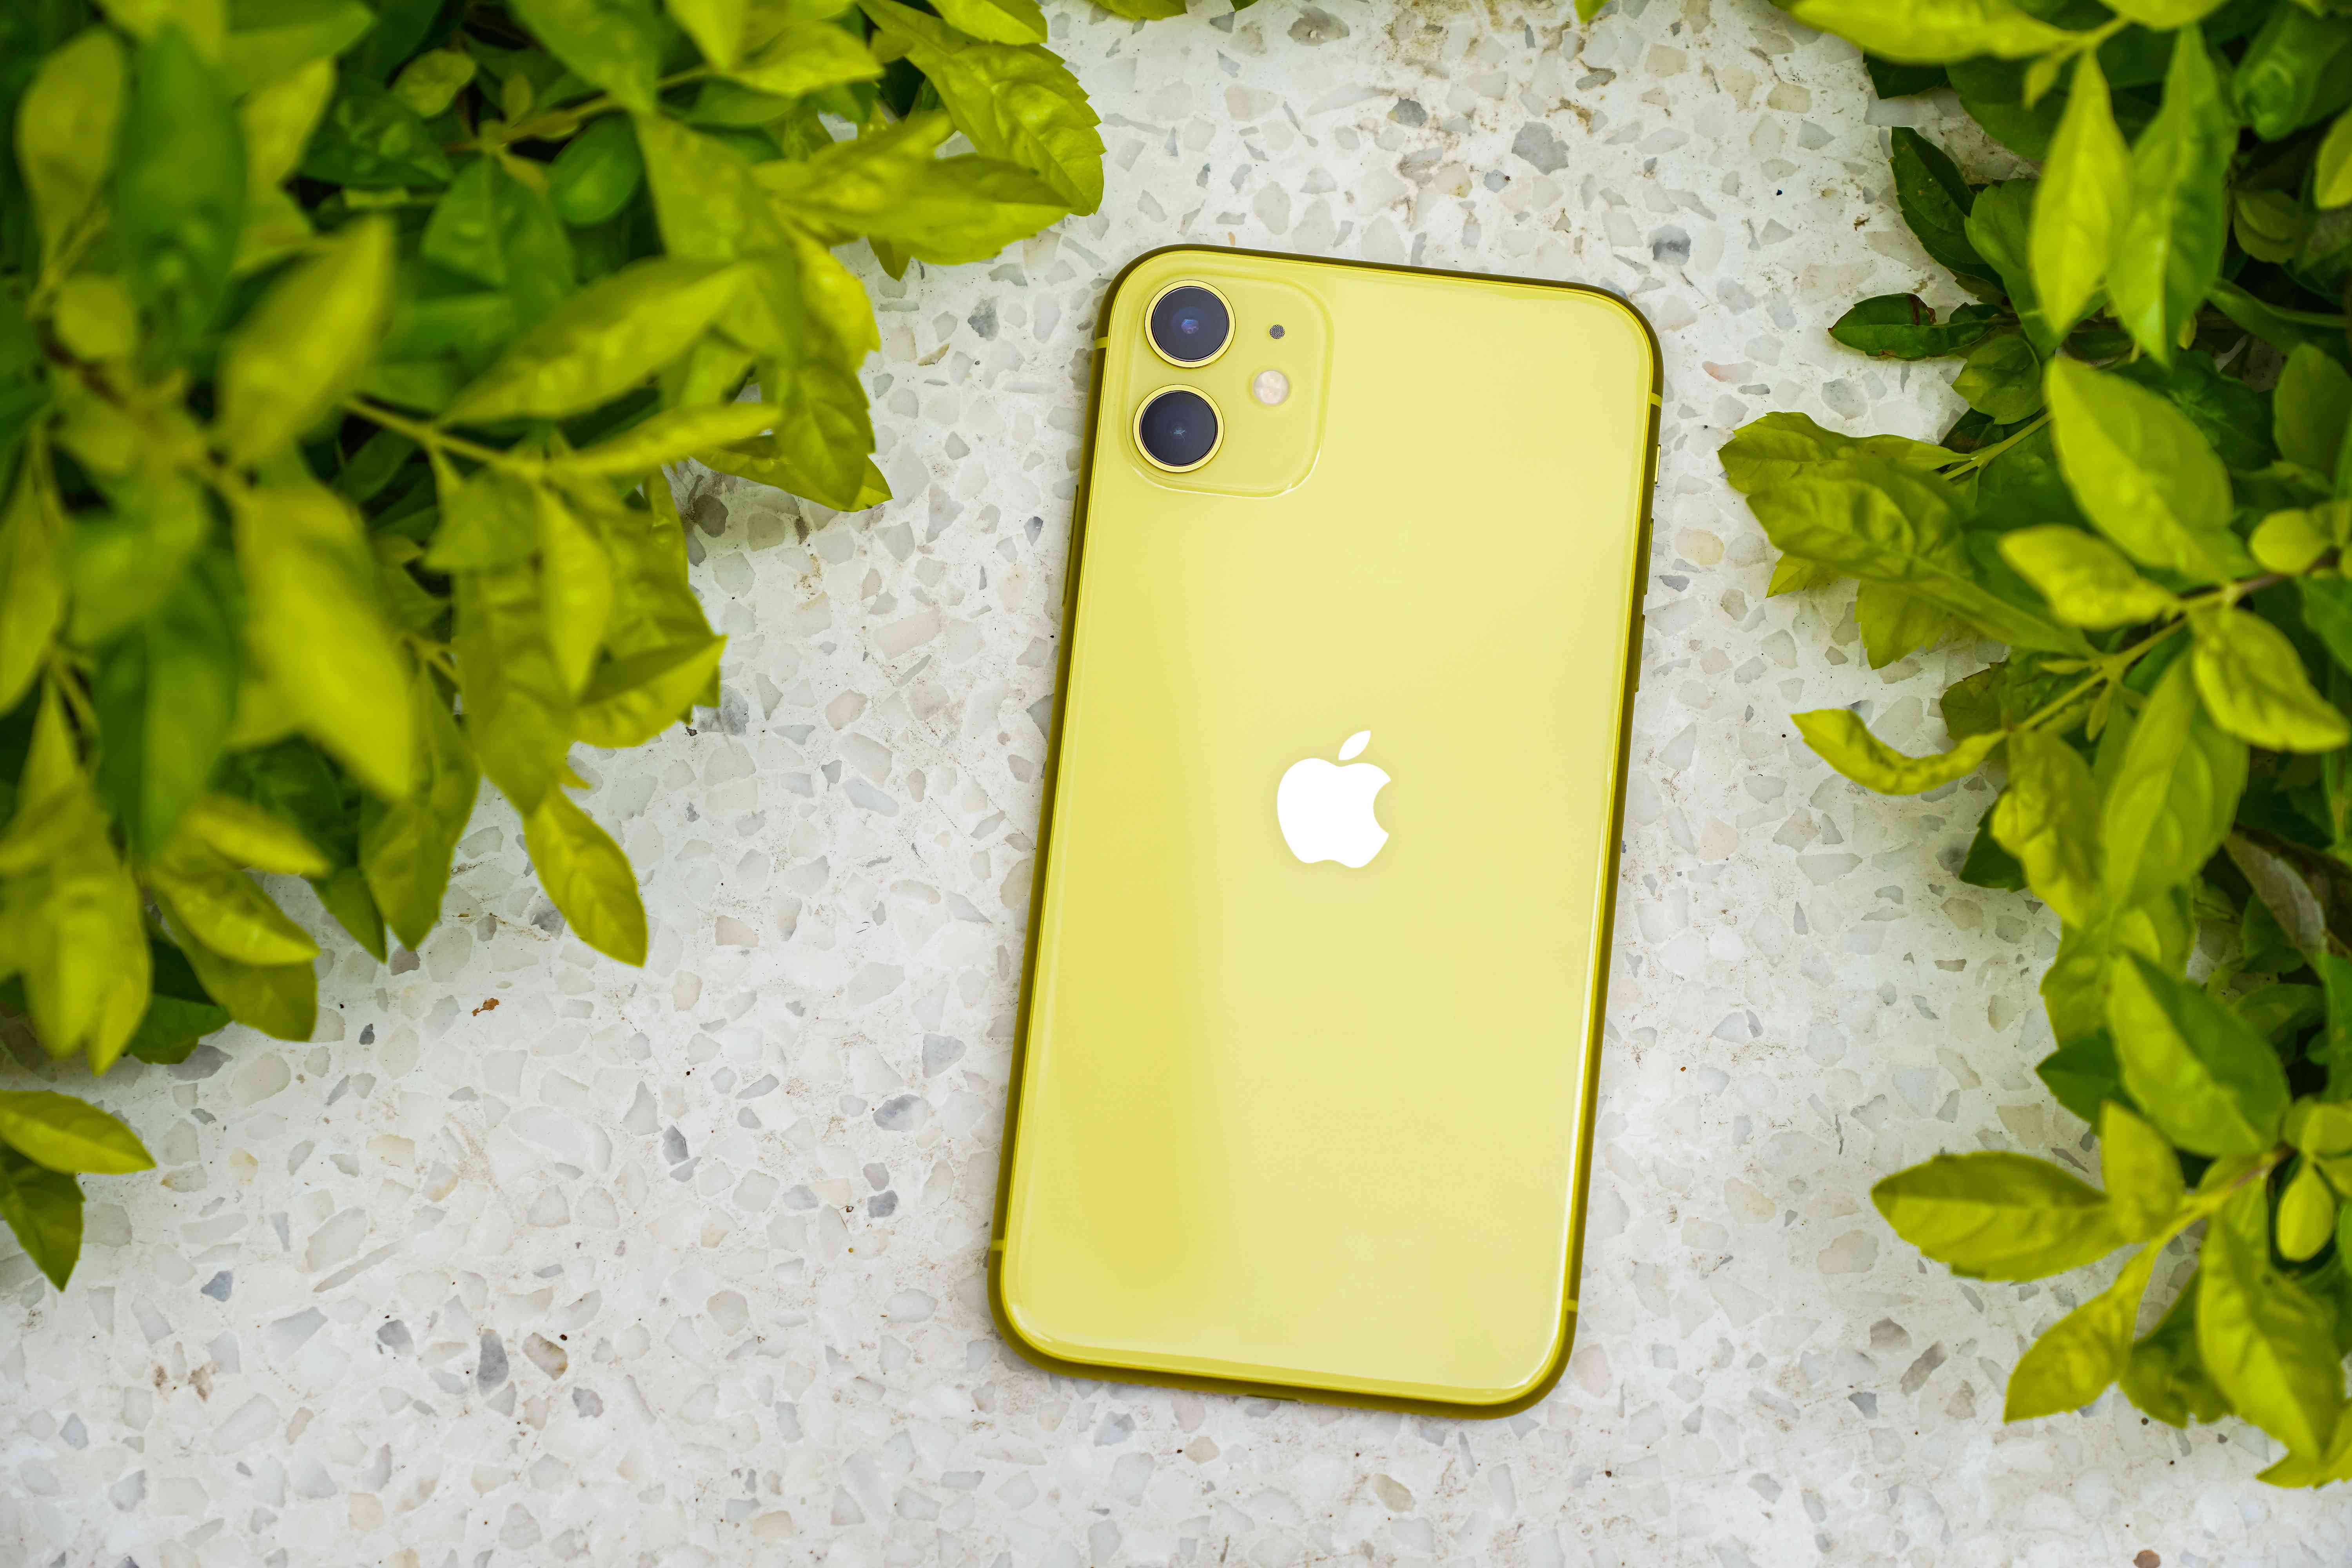 IPhone amarelo no chão